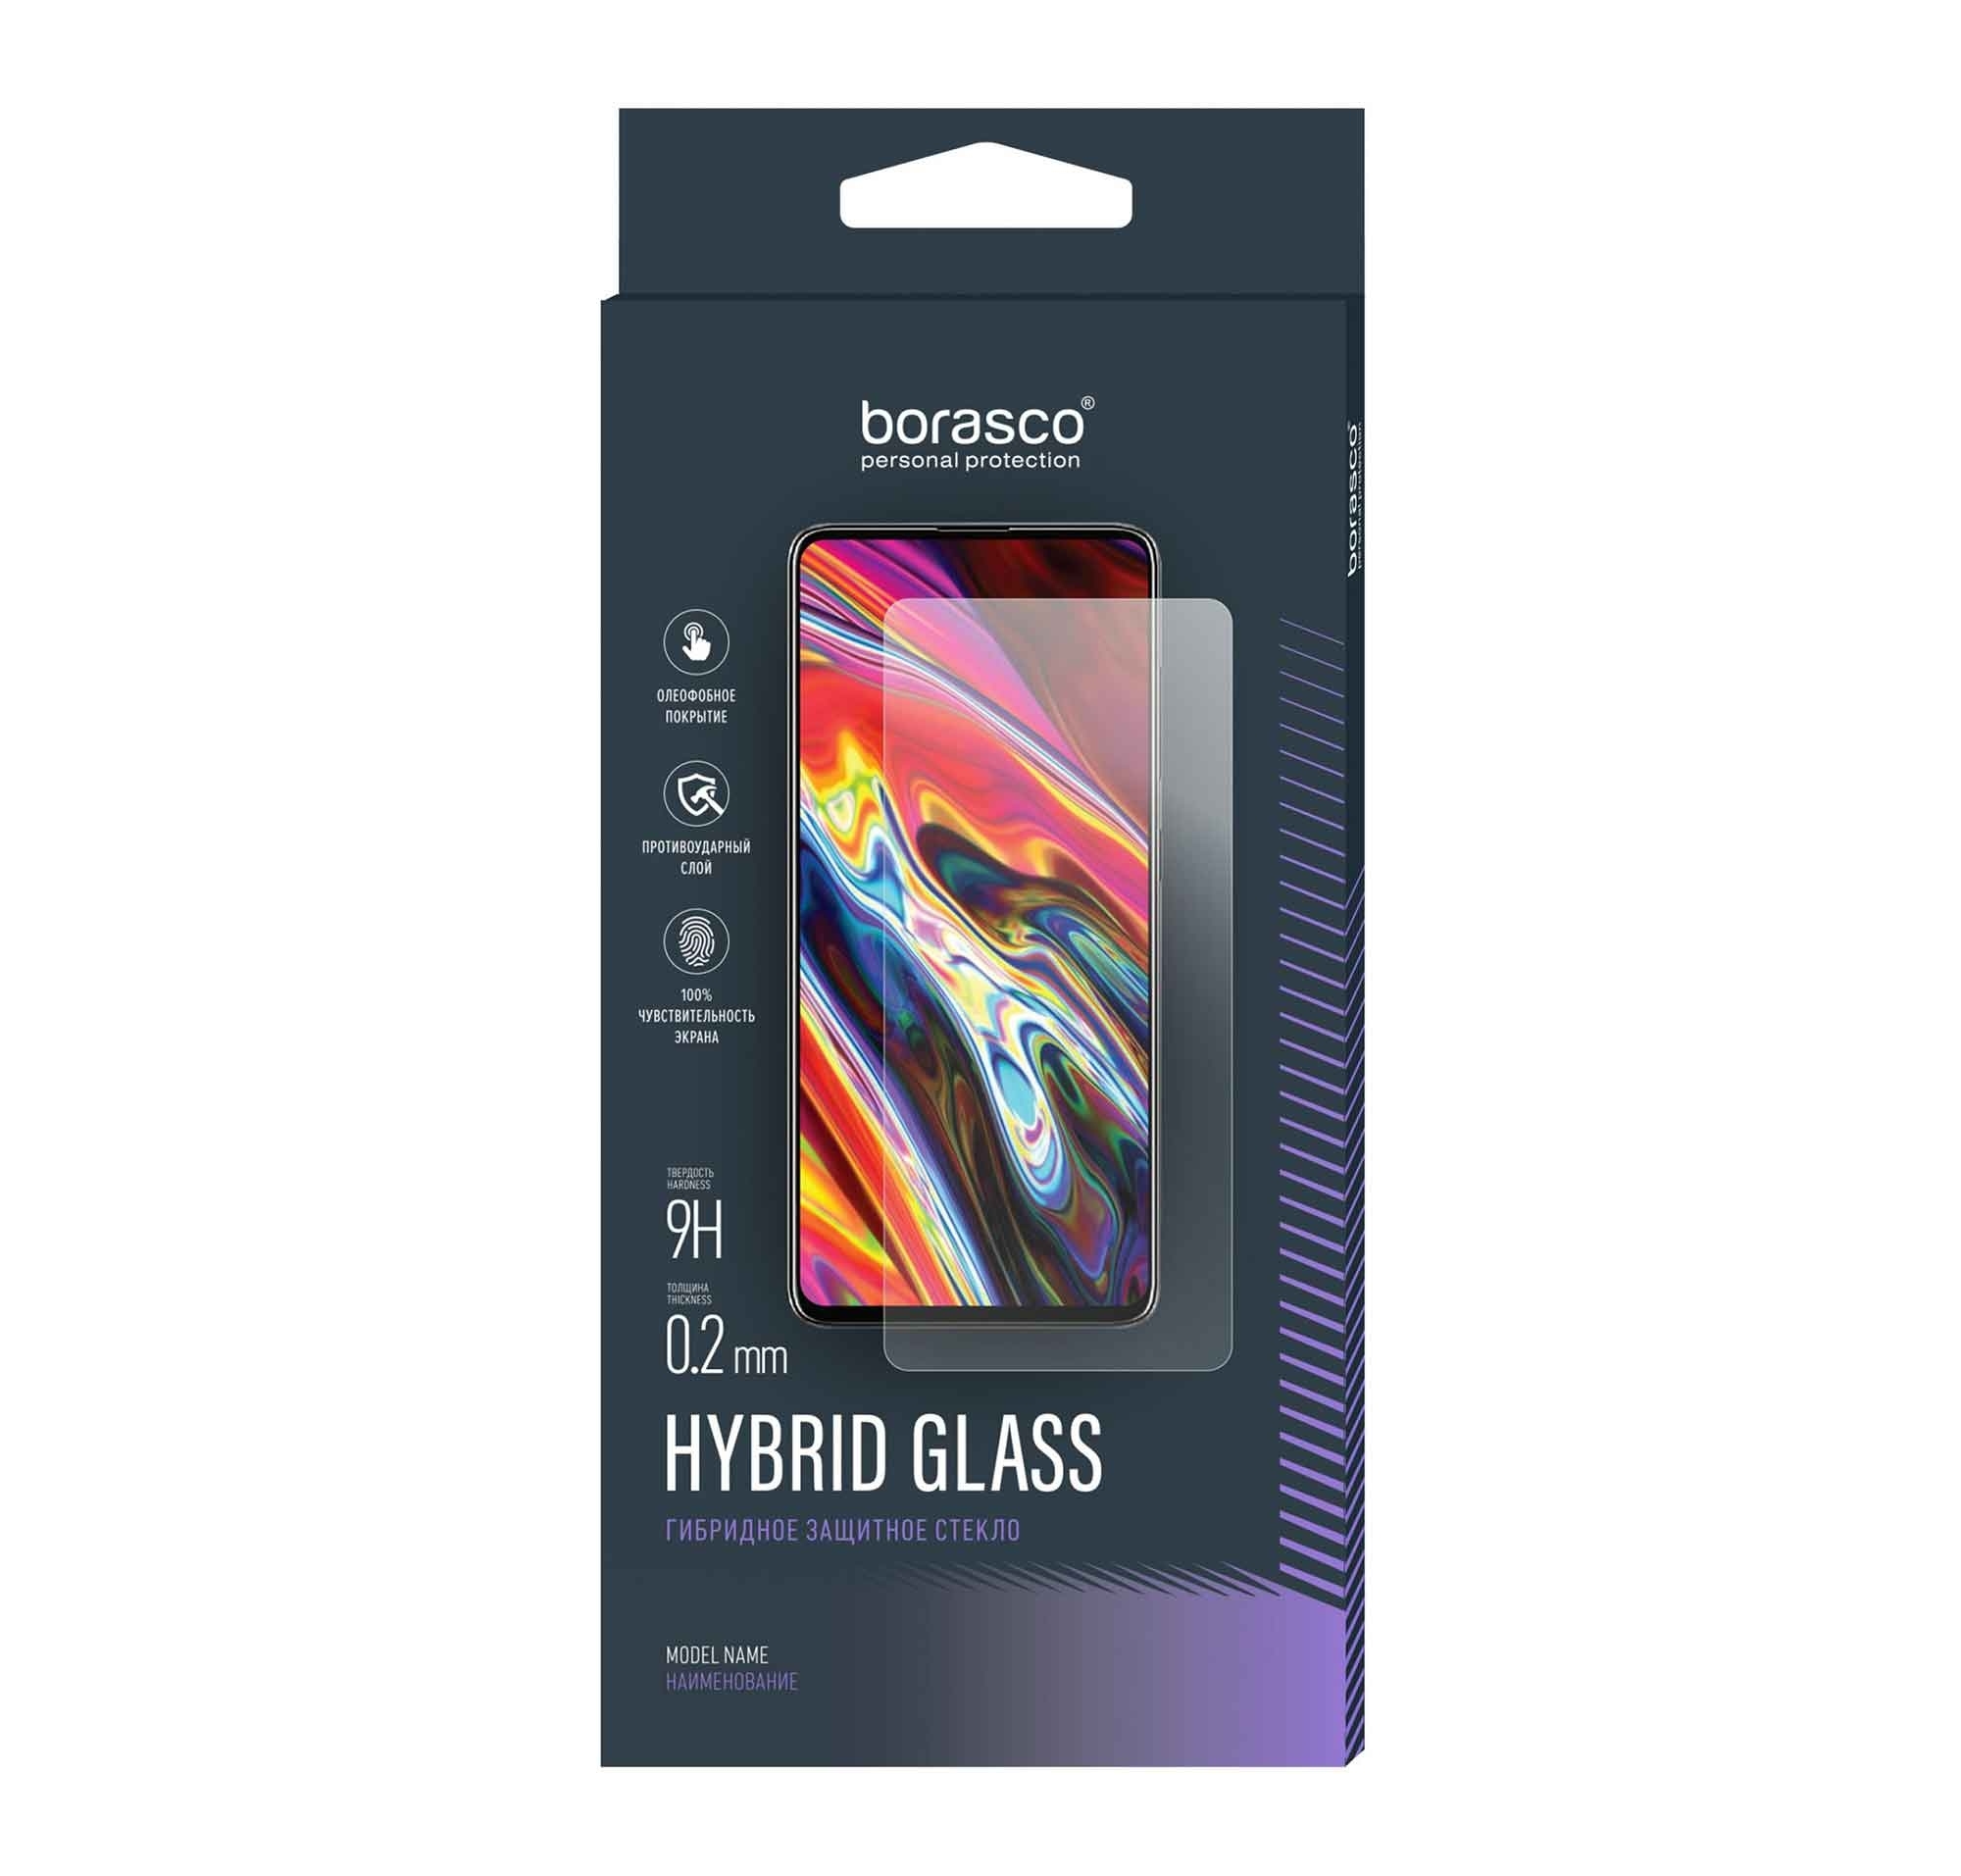 Стекло защитное BoraSCO Hybrid Glass для Tecno Pova Neo 2 стекло защитное borasco hybrid glass для tecno camon 19 neo